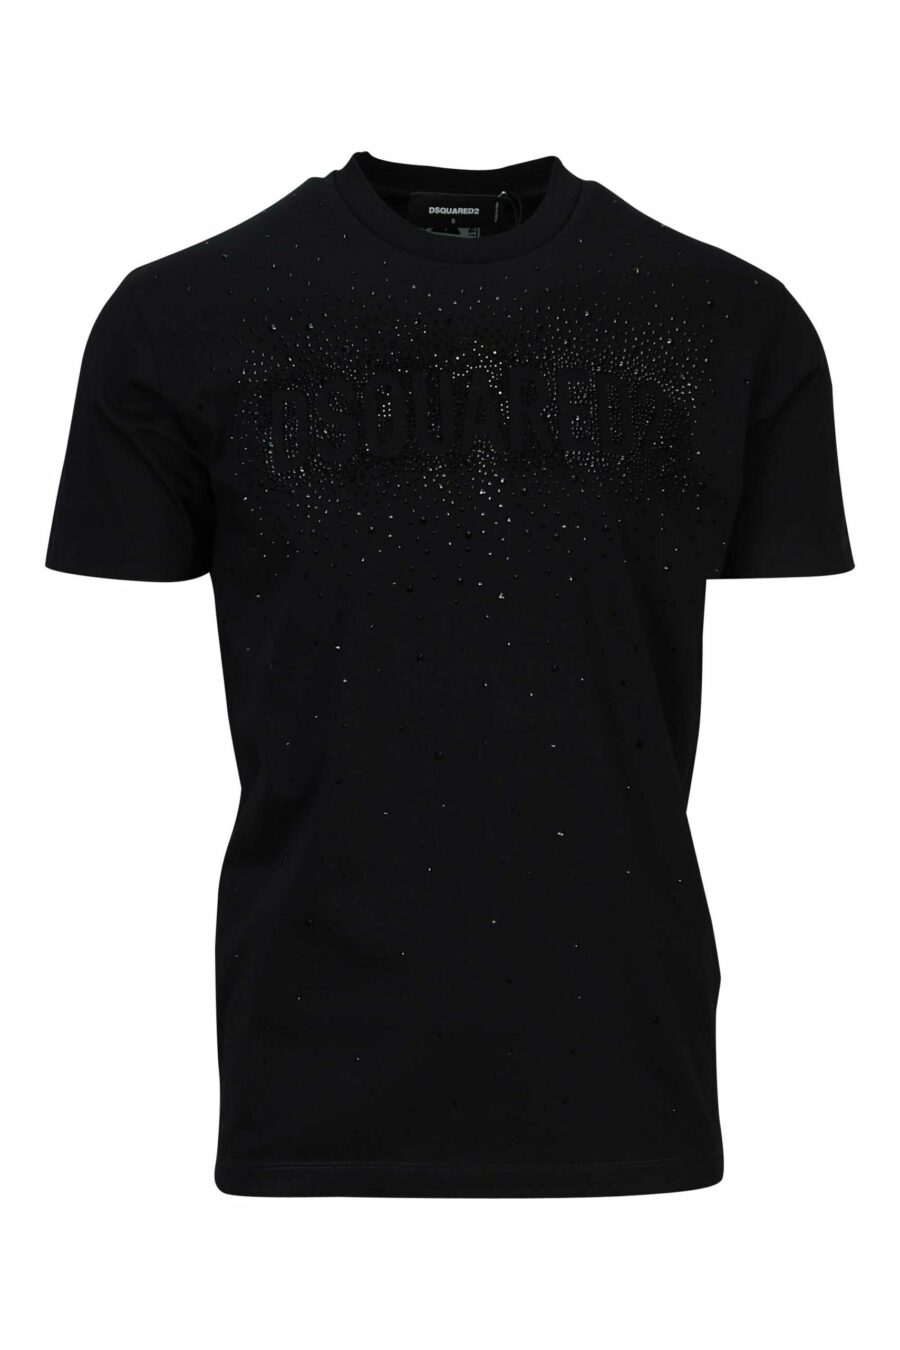 T-shirt preta com maxilogo preto em relevo - 8054148448158 scaled